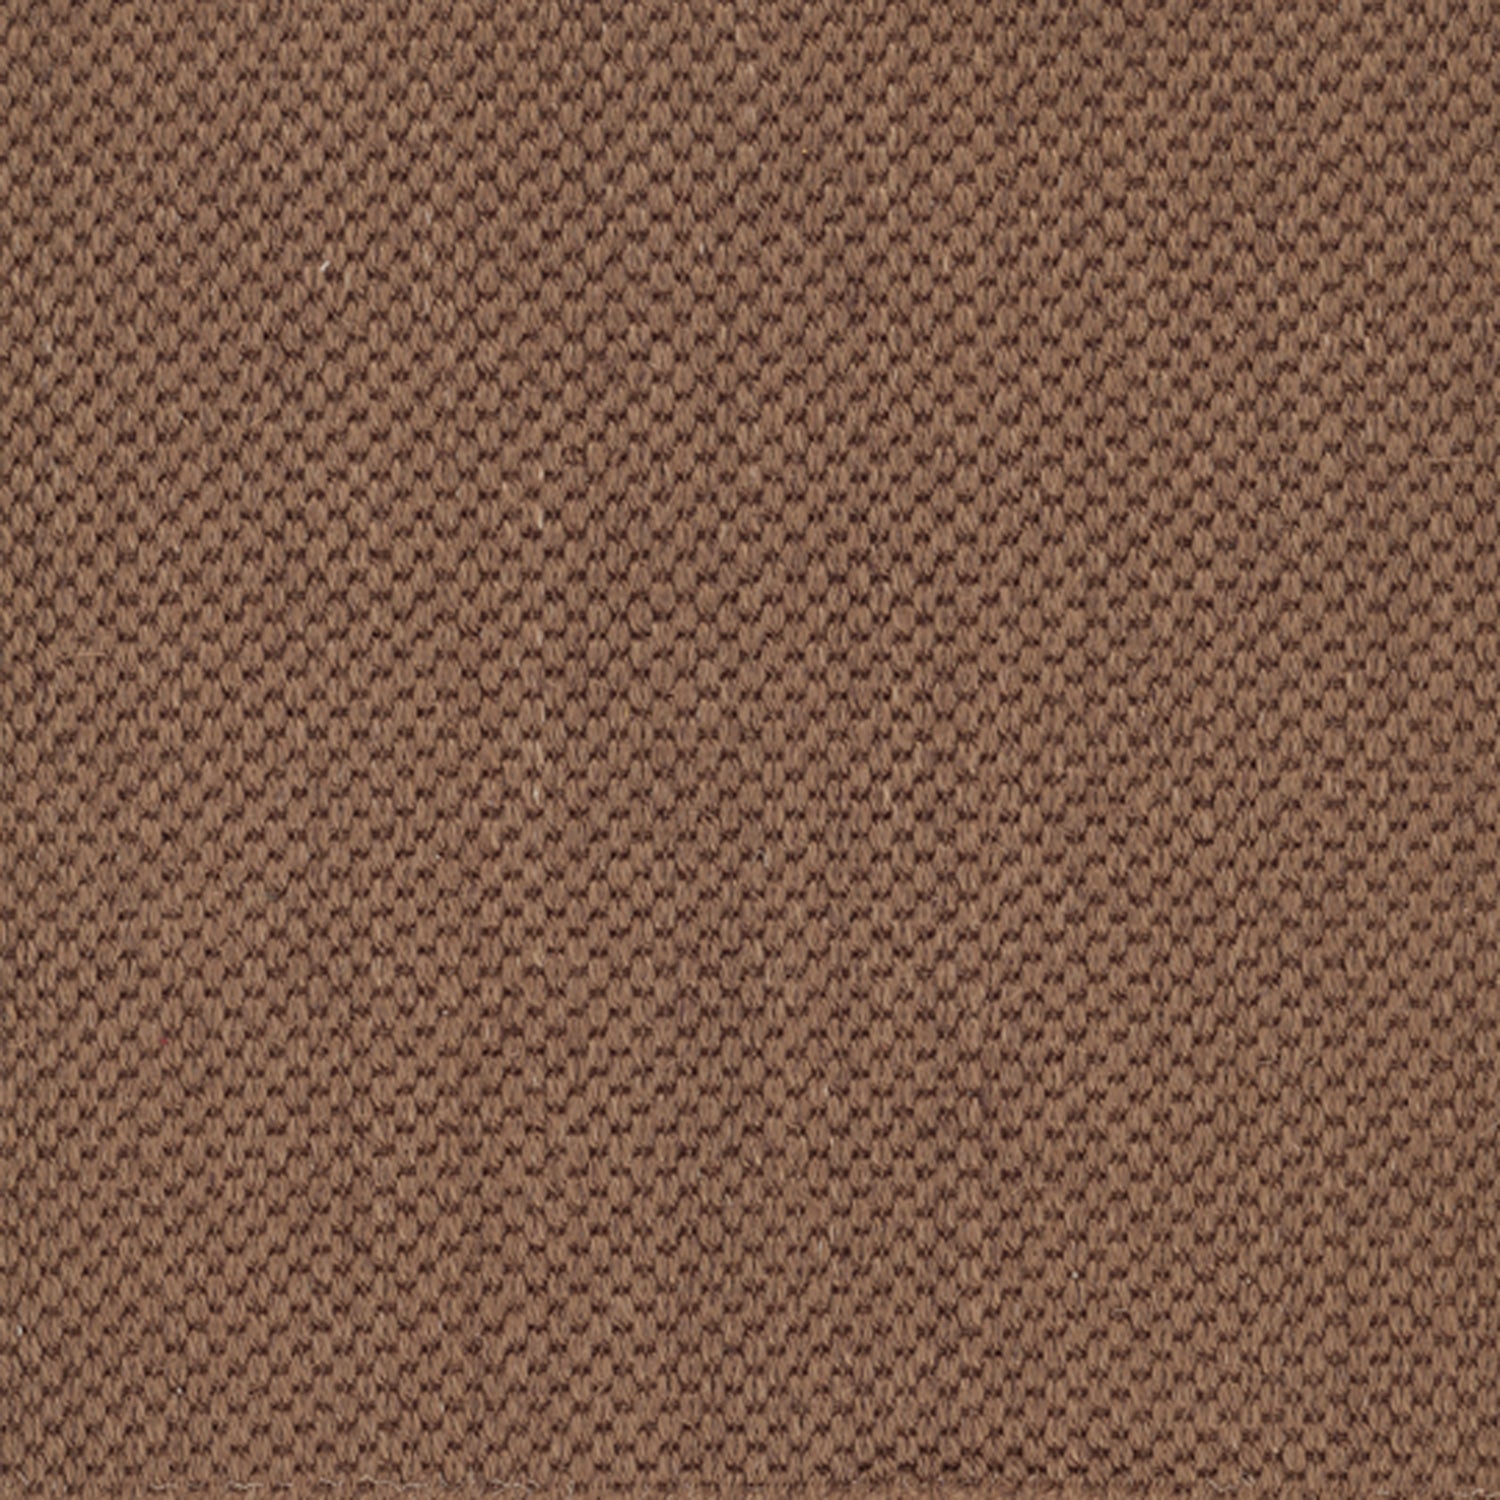 Sisal broadloom carpet swatch in a flat grid weave in "Buckhorn" brown.